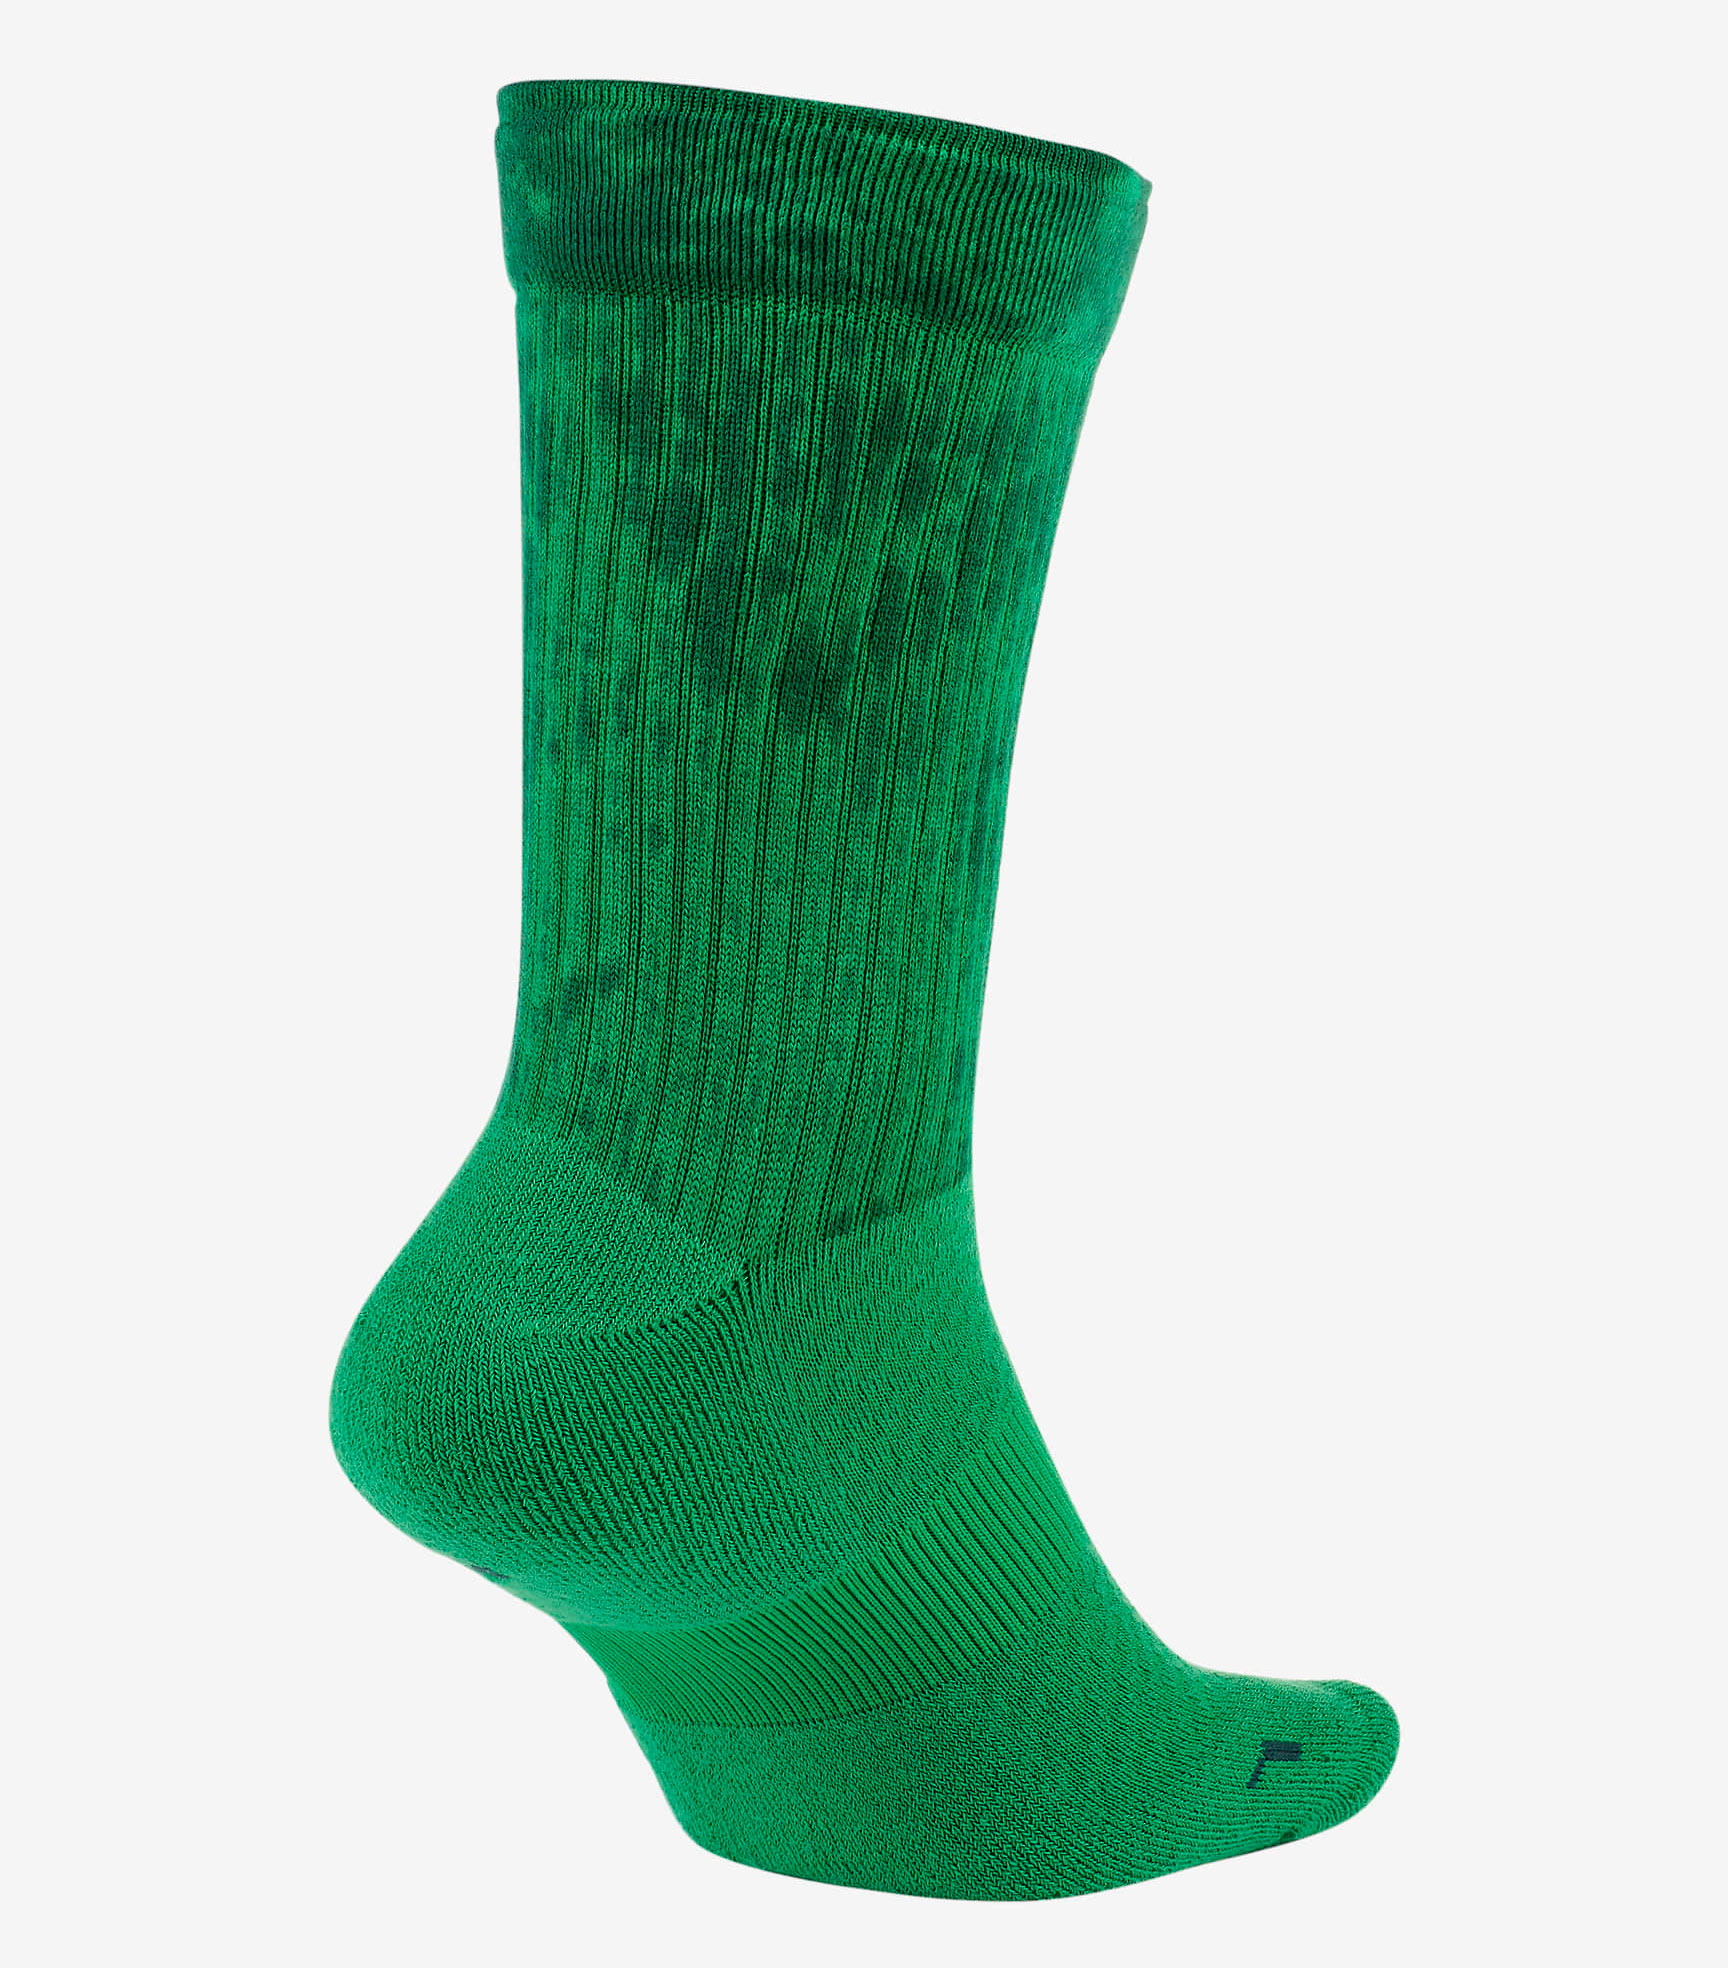 jordan-13-lucky-green-socks-2